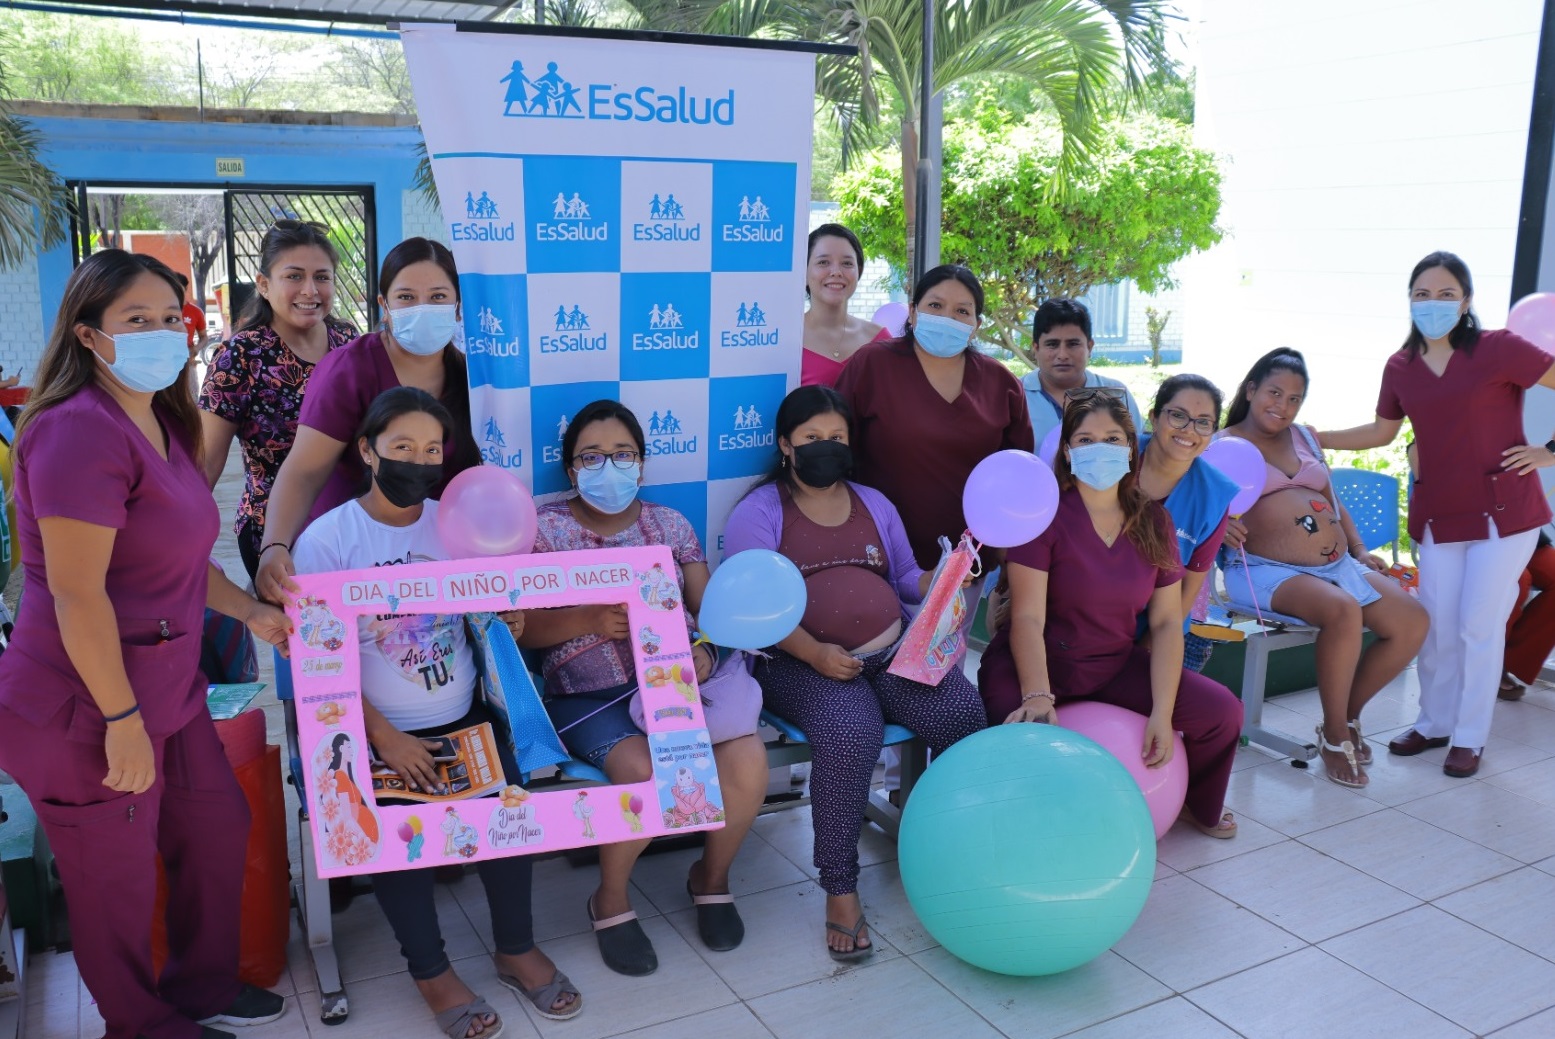 Essalud - Obstetras de EsSalud Piura realizan actividades dinámicas por el Día del Niño por Nacer